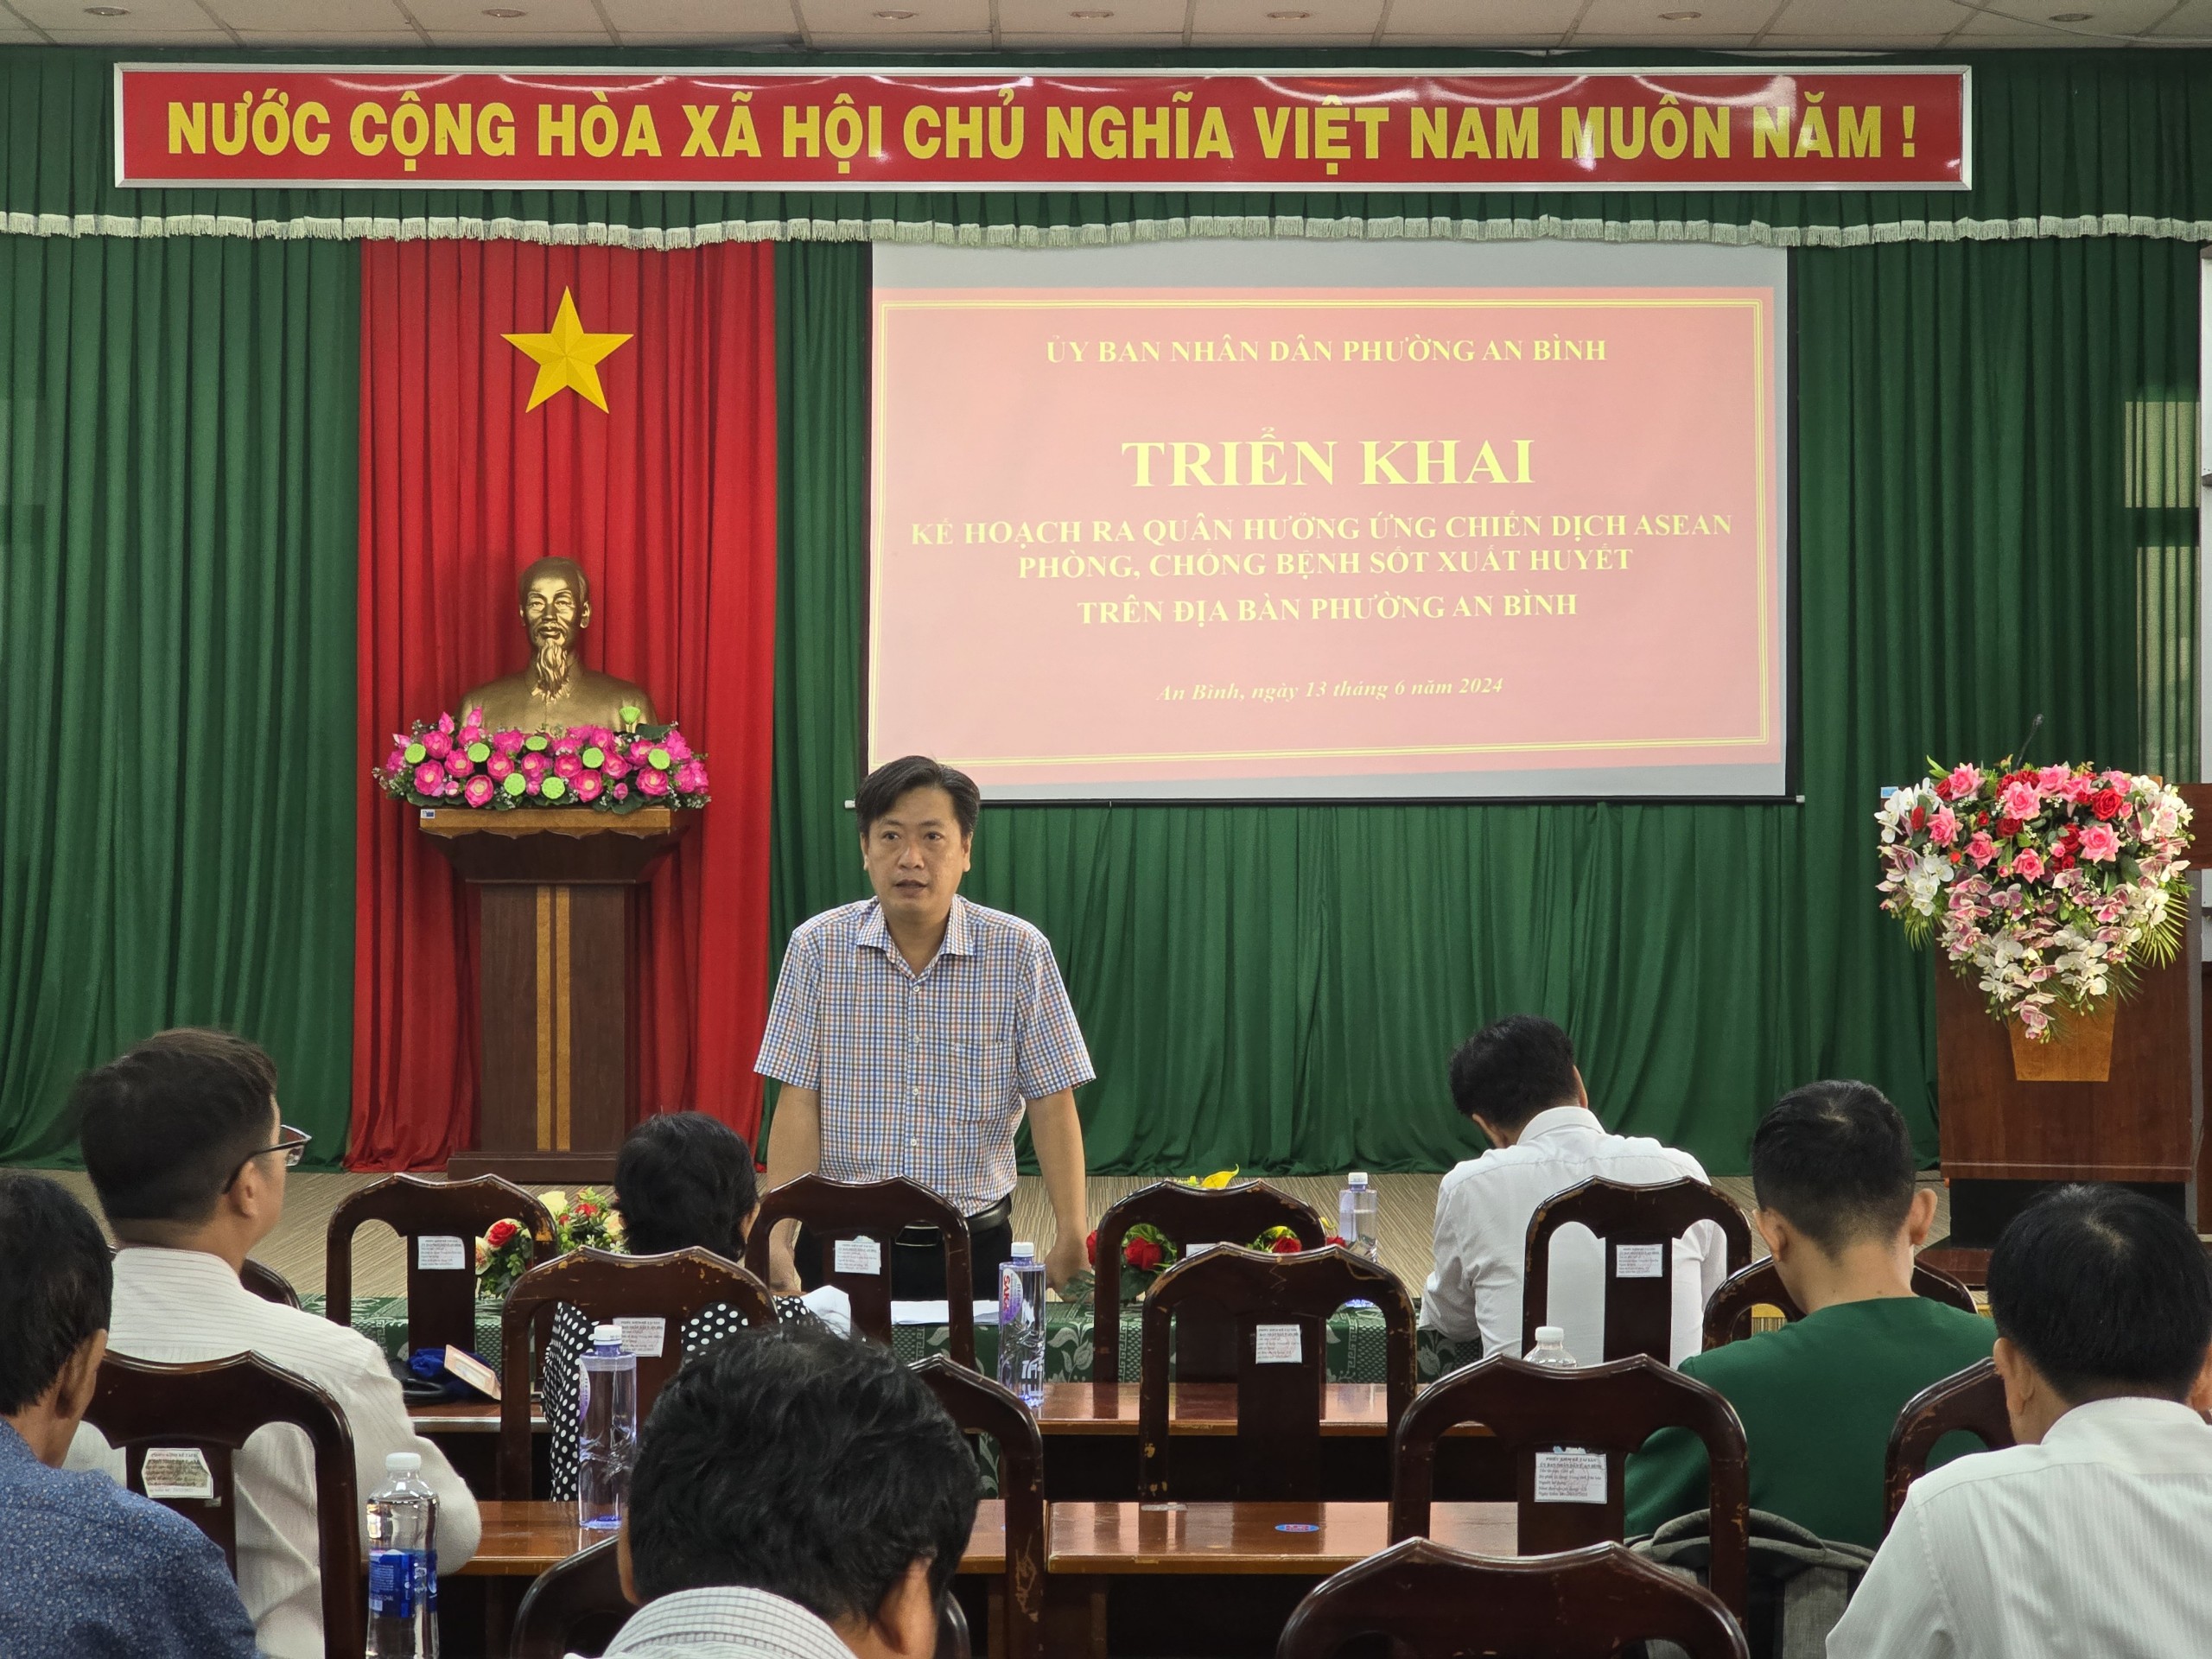 Hình 1. Ông Nguyễn Hoàng Thanh Khiết Phó Chủ tịch UBND phường An Bình chỉ đạo thực hiện chiến dịch